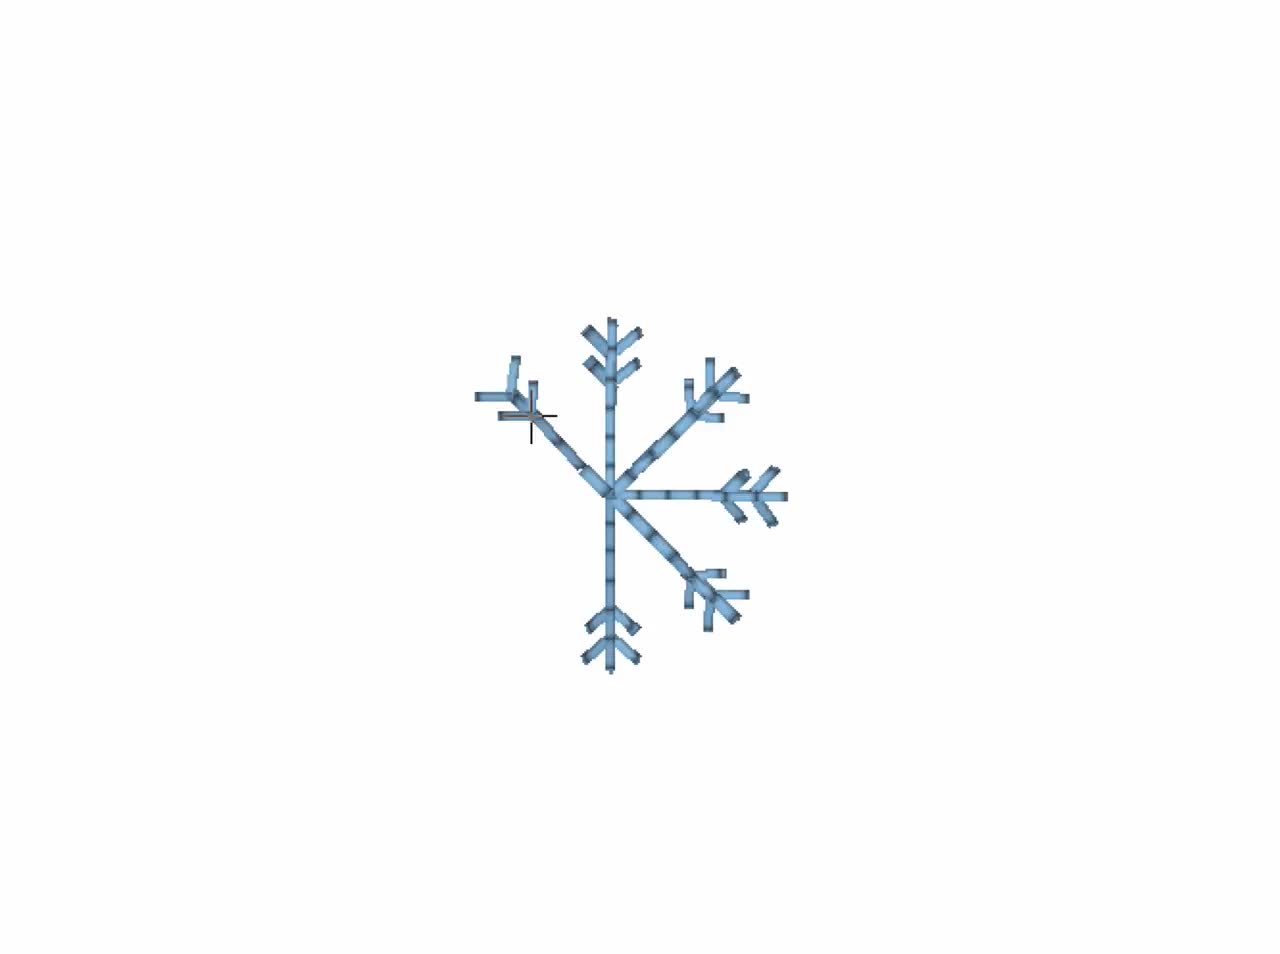 Micro mini small 8 single Snowflakes machine embroidery designs, files in  mini sizes 0.45, 0.6, 0.8 inch small winter snowflake set of 8